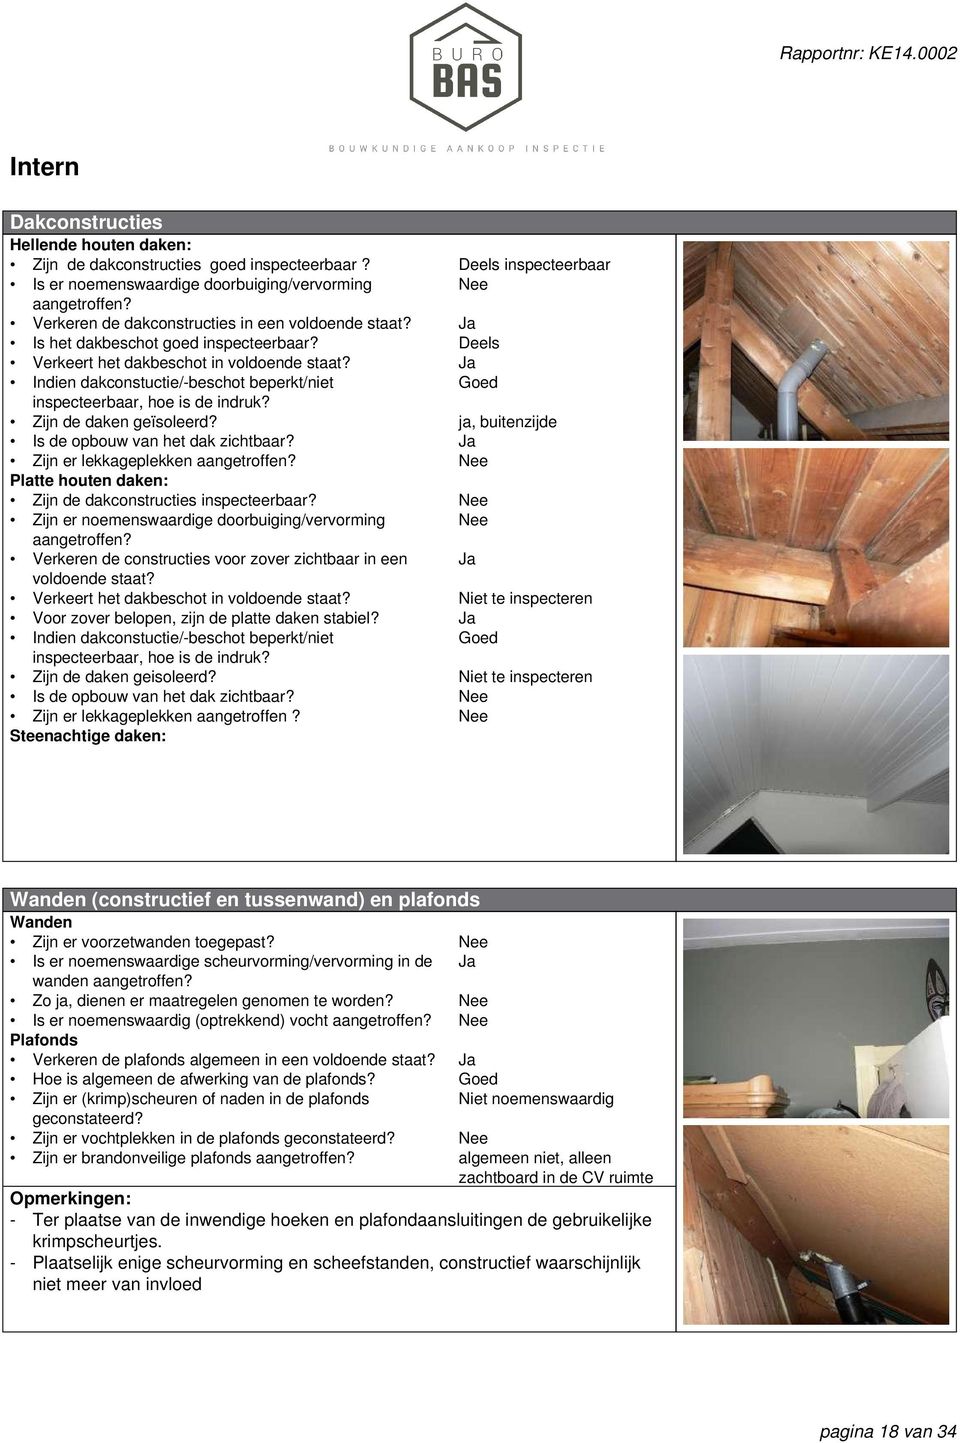 Is de opbouw van het dak zichtbaar? Zijn er lekkageplekken aangetroffen? Platte houten daken Zijn de dakconstructies inspecteerbaar? Zijn er noemenswaardige doorbuiging/vervorming aangetroffen?